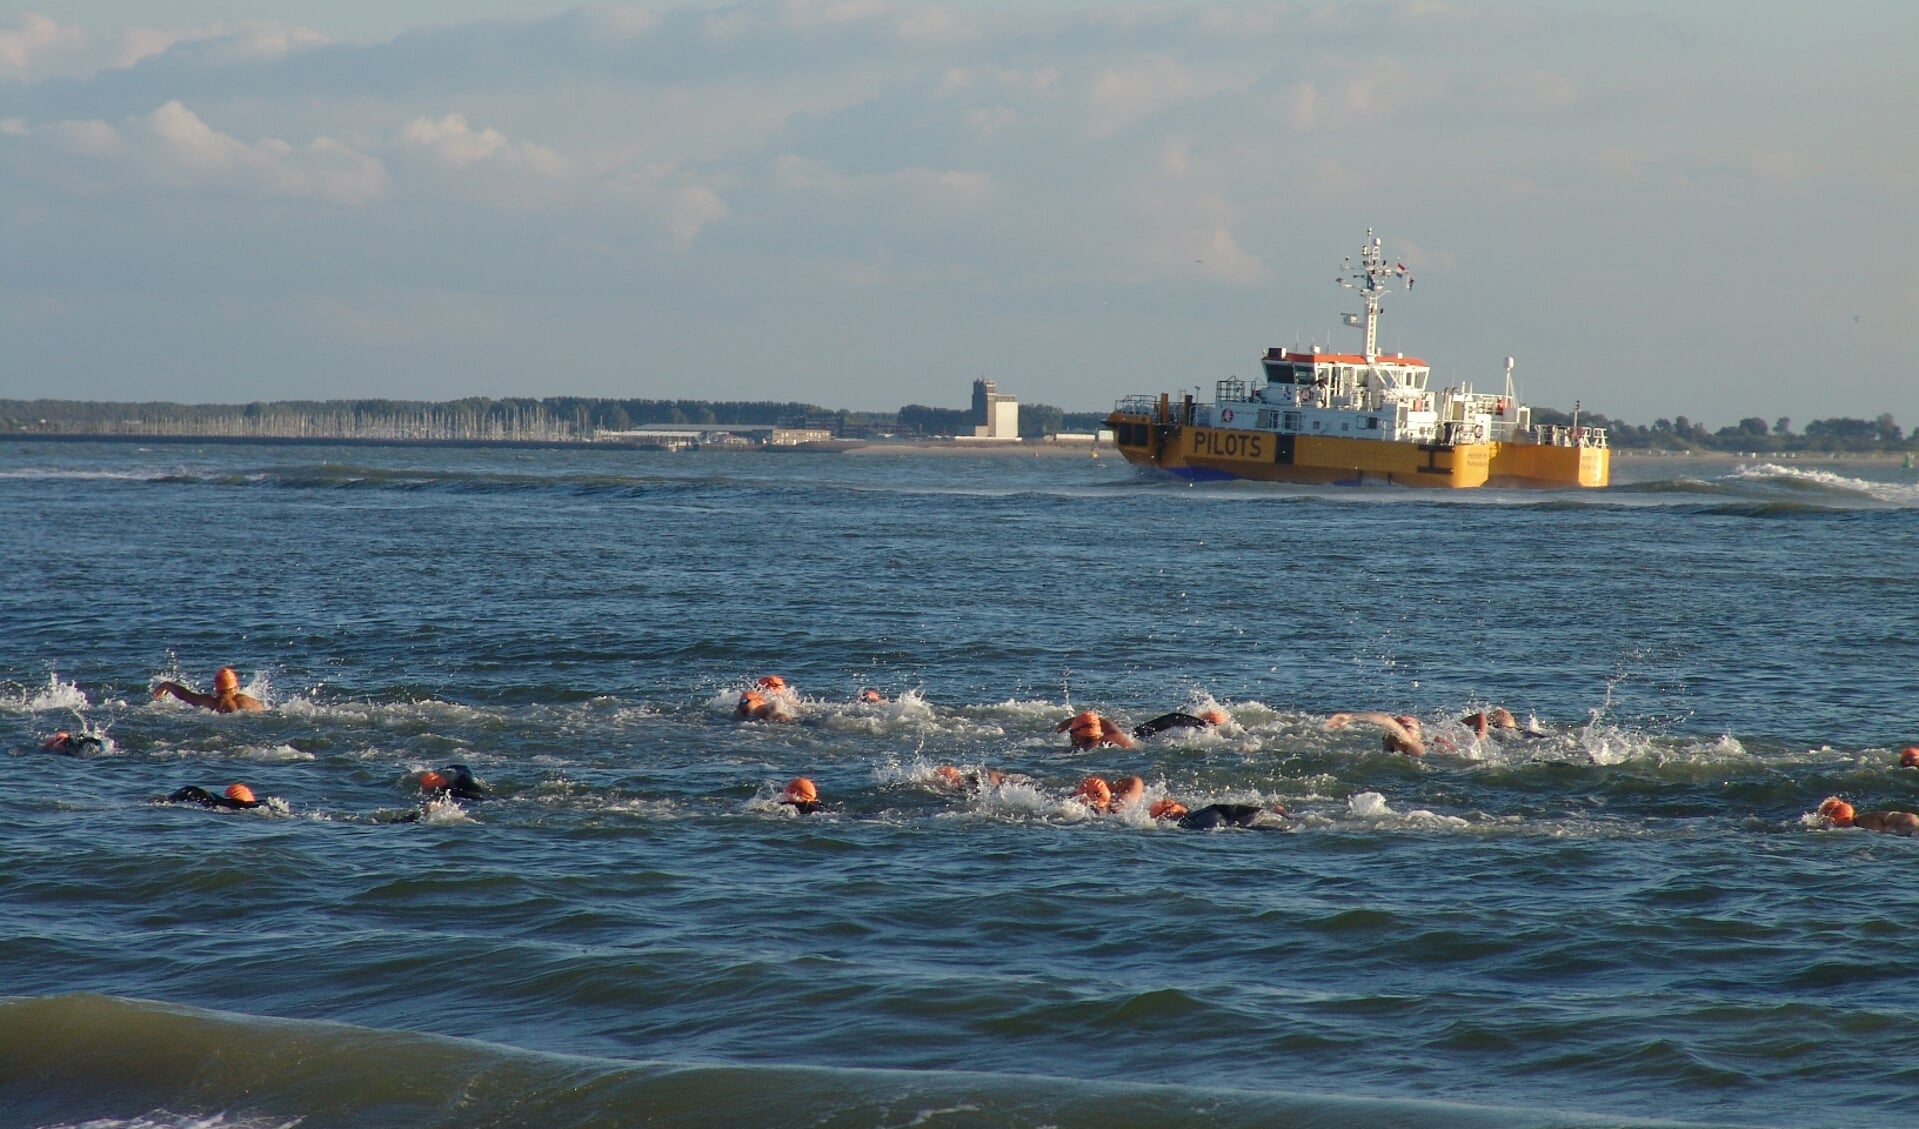 De zwemtocht voert langs de kust van Walcheren.